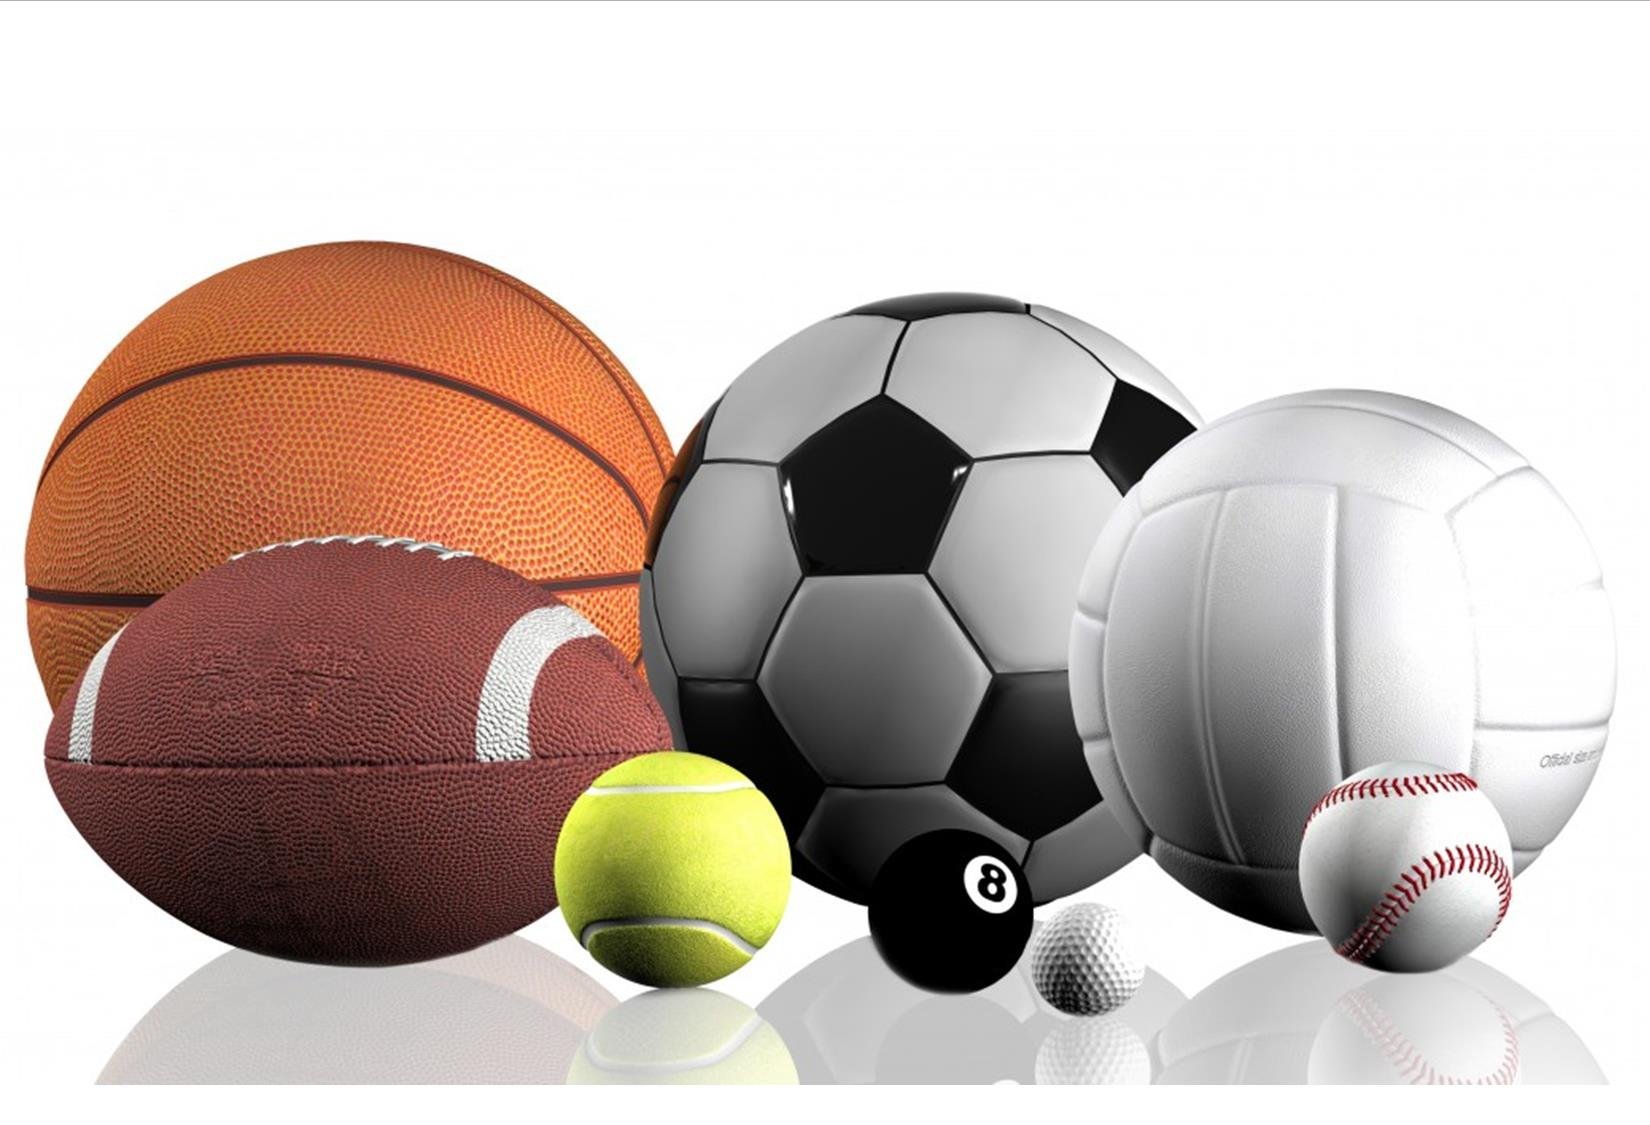 קנה כדור לספורט בישראל בלוח המודעות